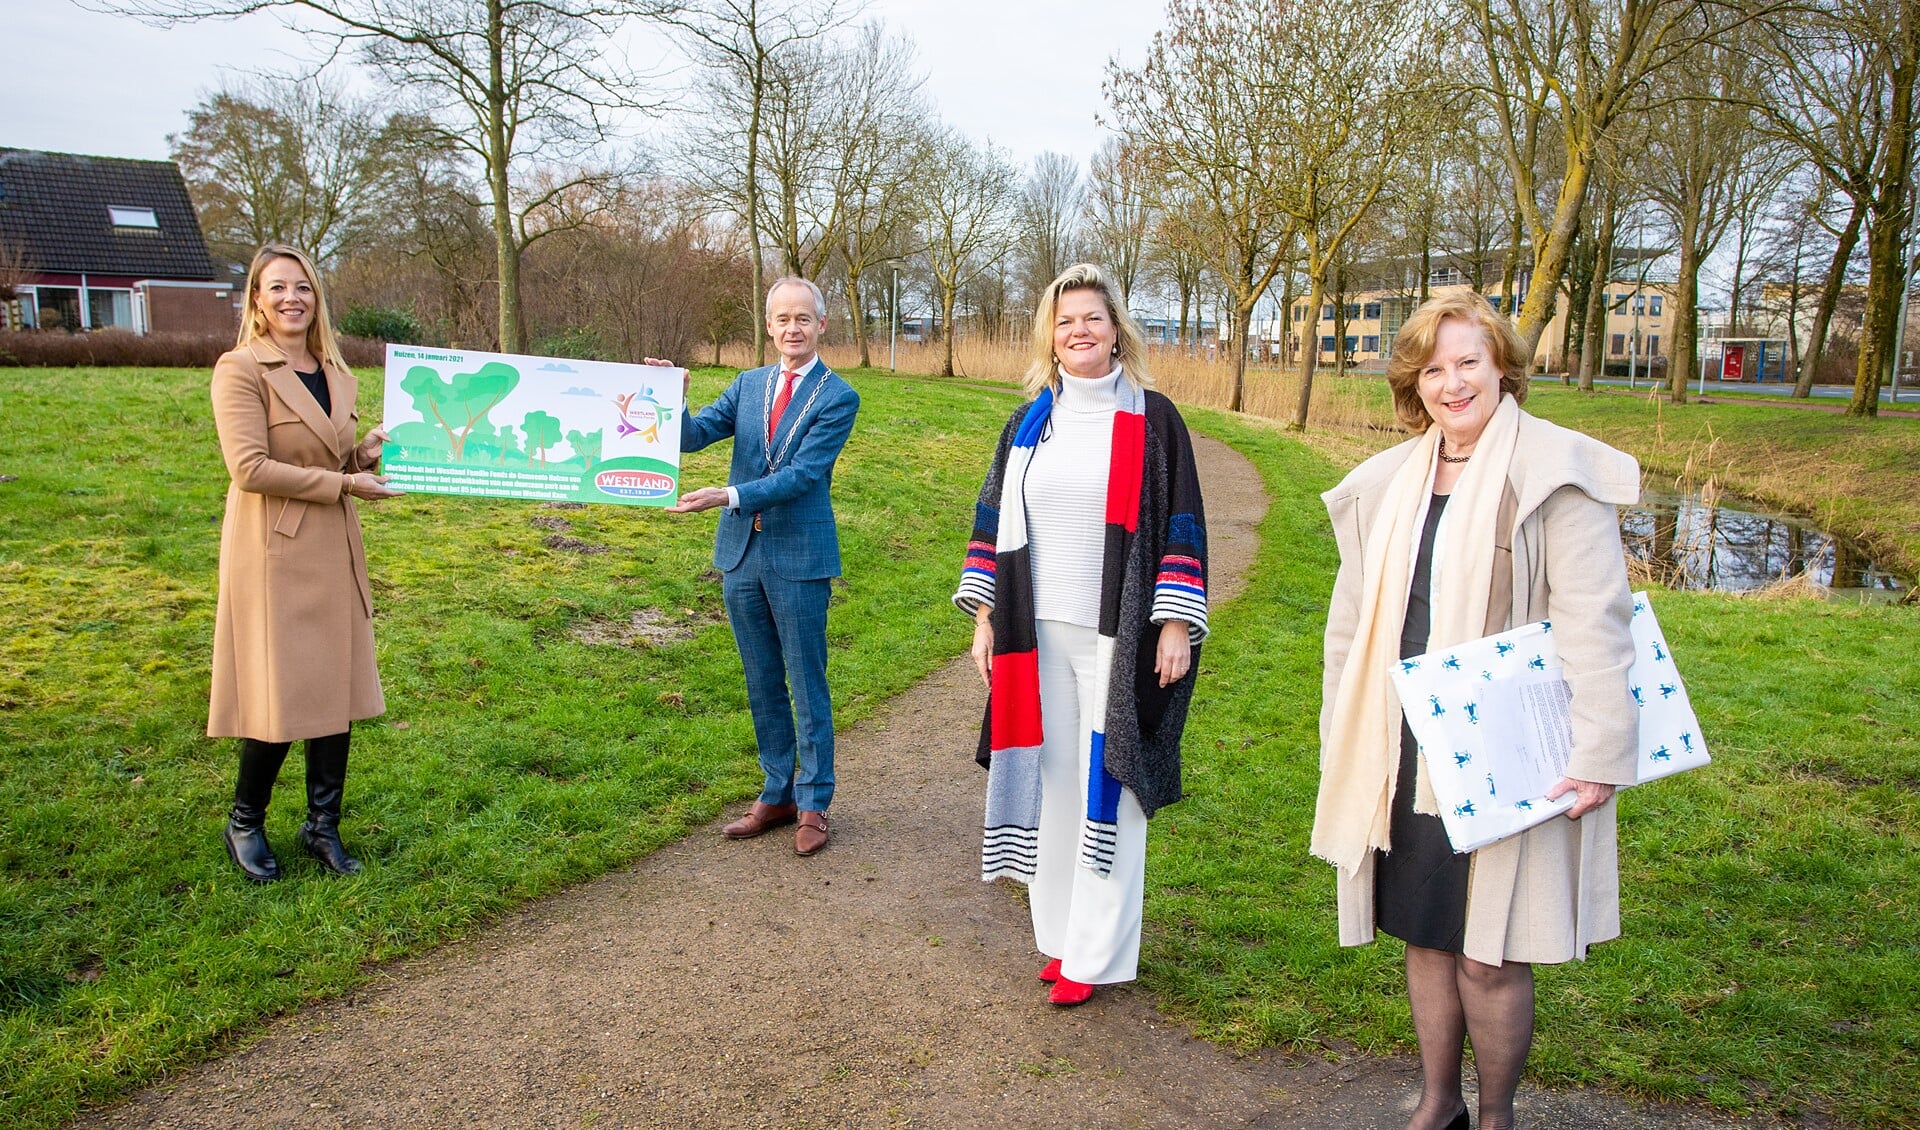 Marjolein Schuyt (l) overhandigt burgemeester Niek Meijer het Westlandpark symbolisch onder toeziend oog van CEO Henny Westland en wethouder Marlous Verbeek (r).